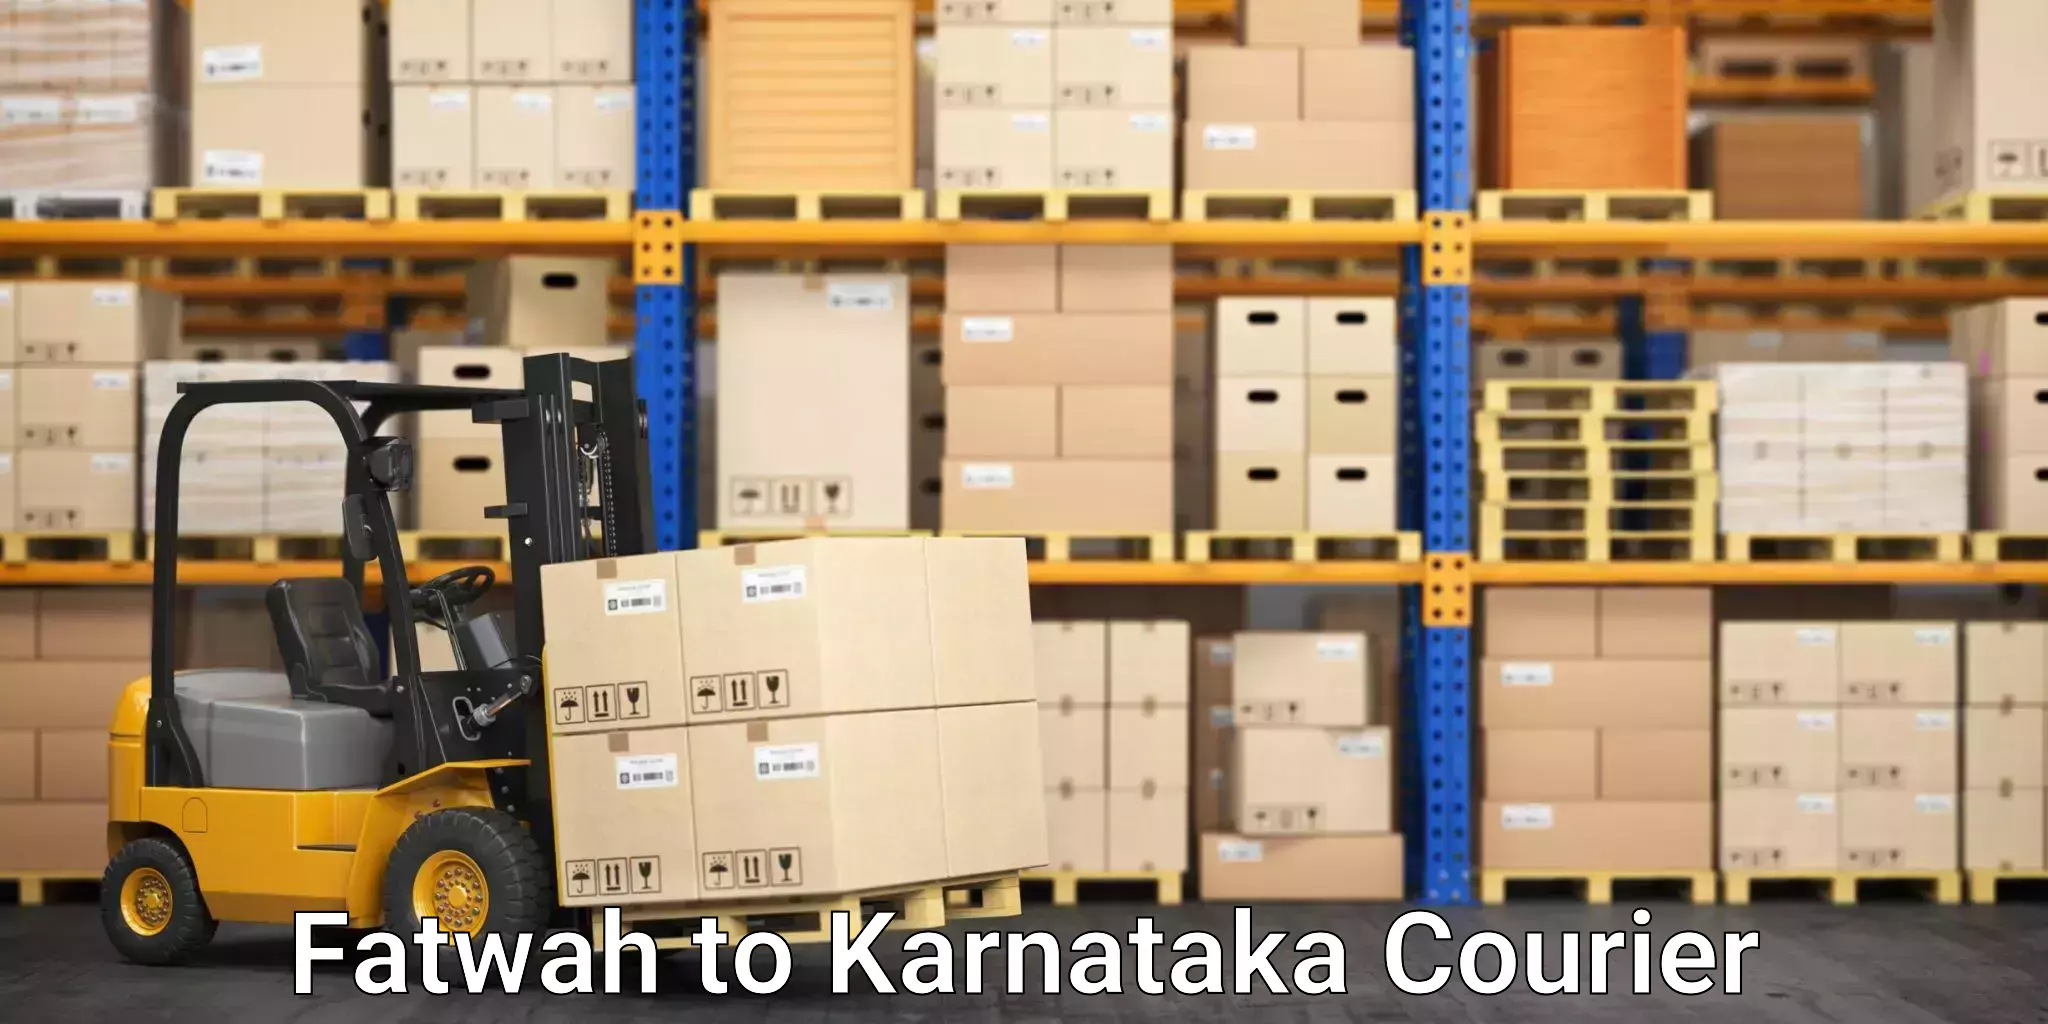 Residential furniture movers Fatwah to Karnataka